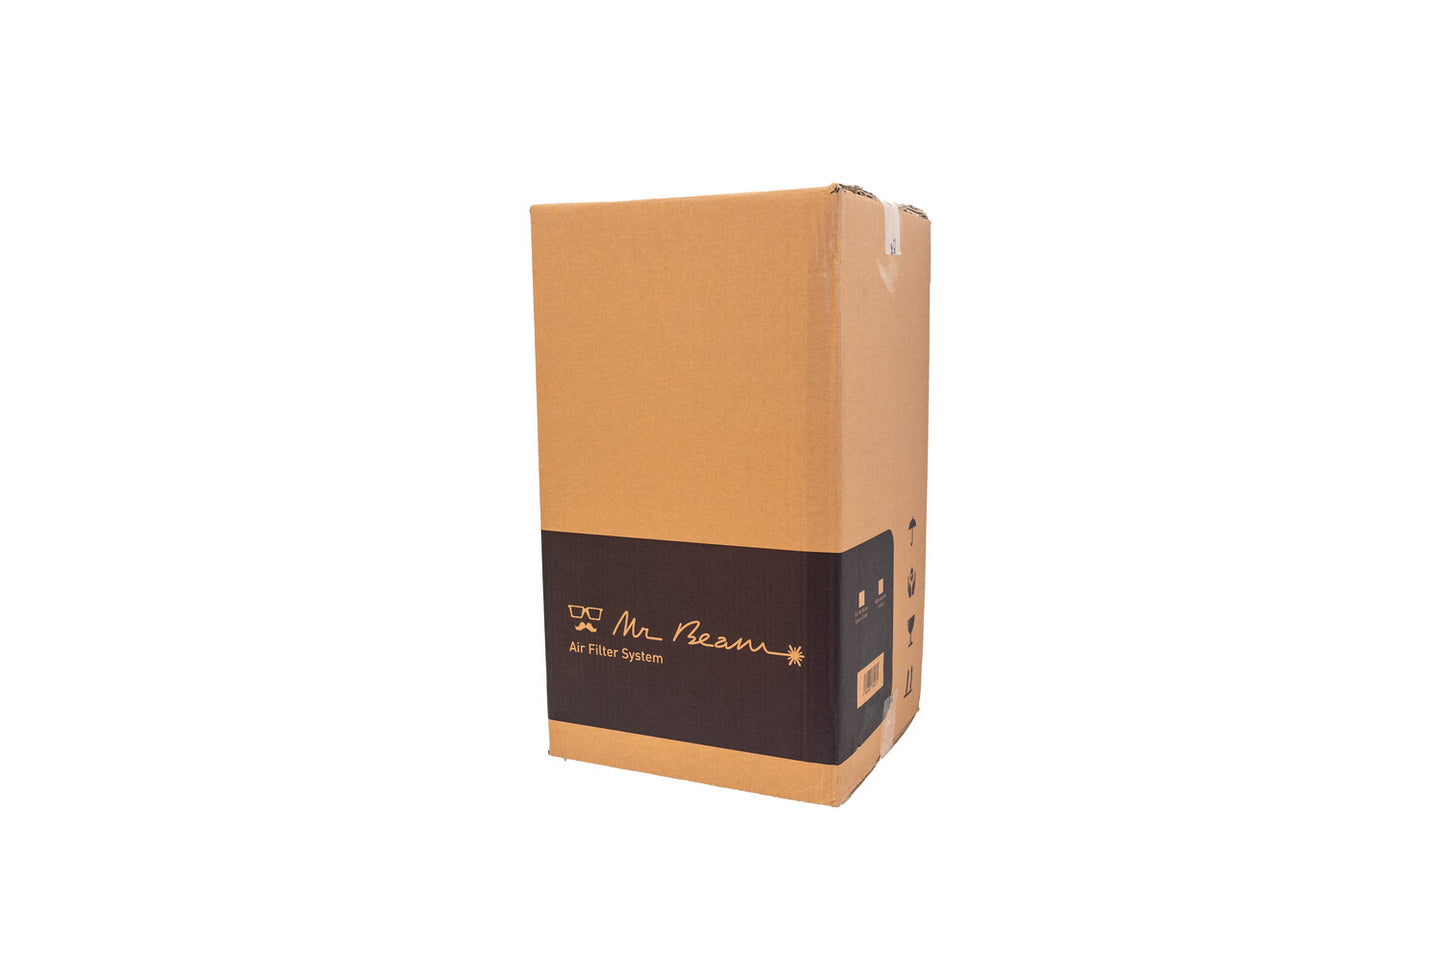 Mr Beam Air Filter II Caja y material de embalaje